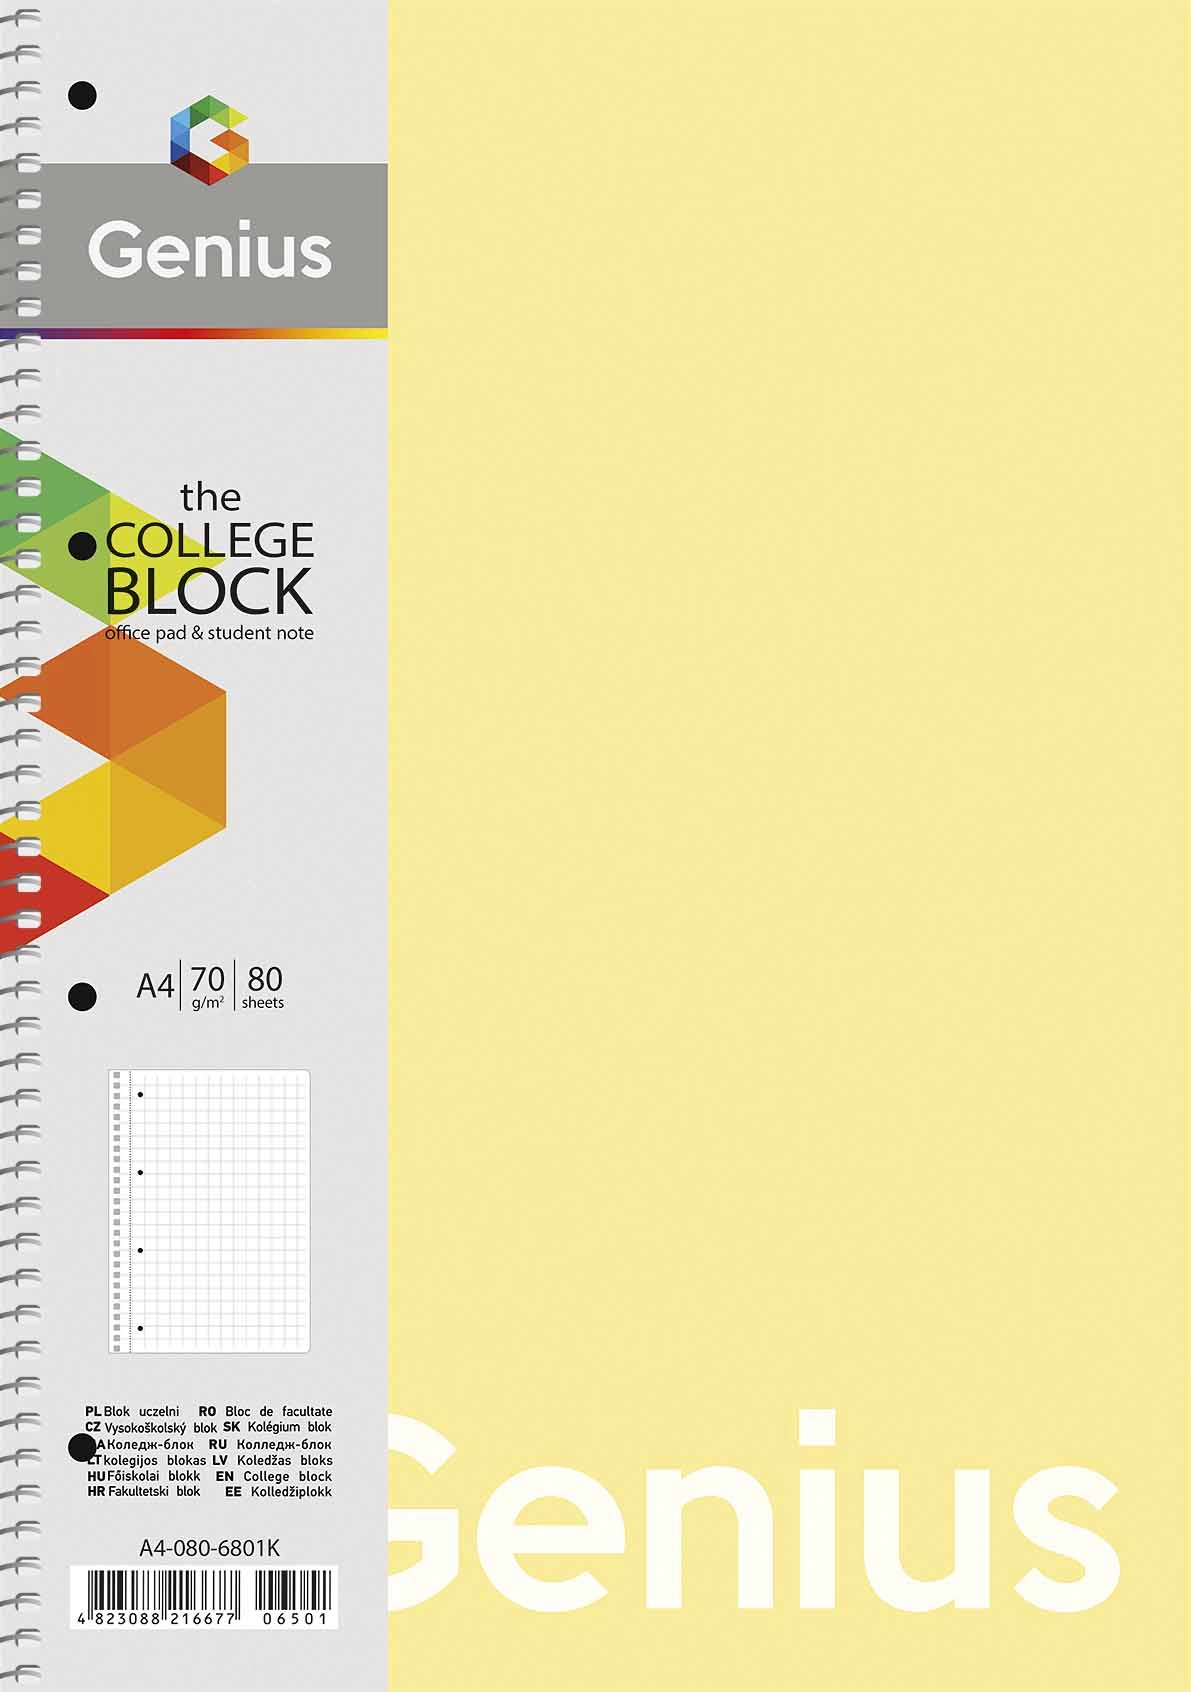 Коледж-блок, спiраль, А4/80арк., у лінію Genius A4-080-6801L